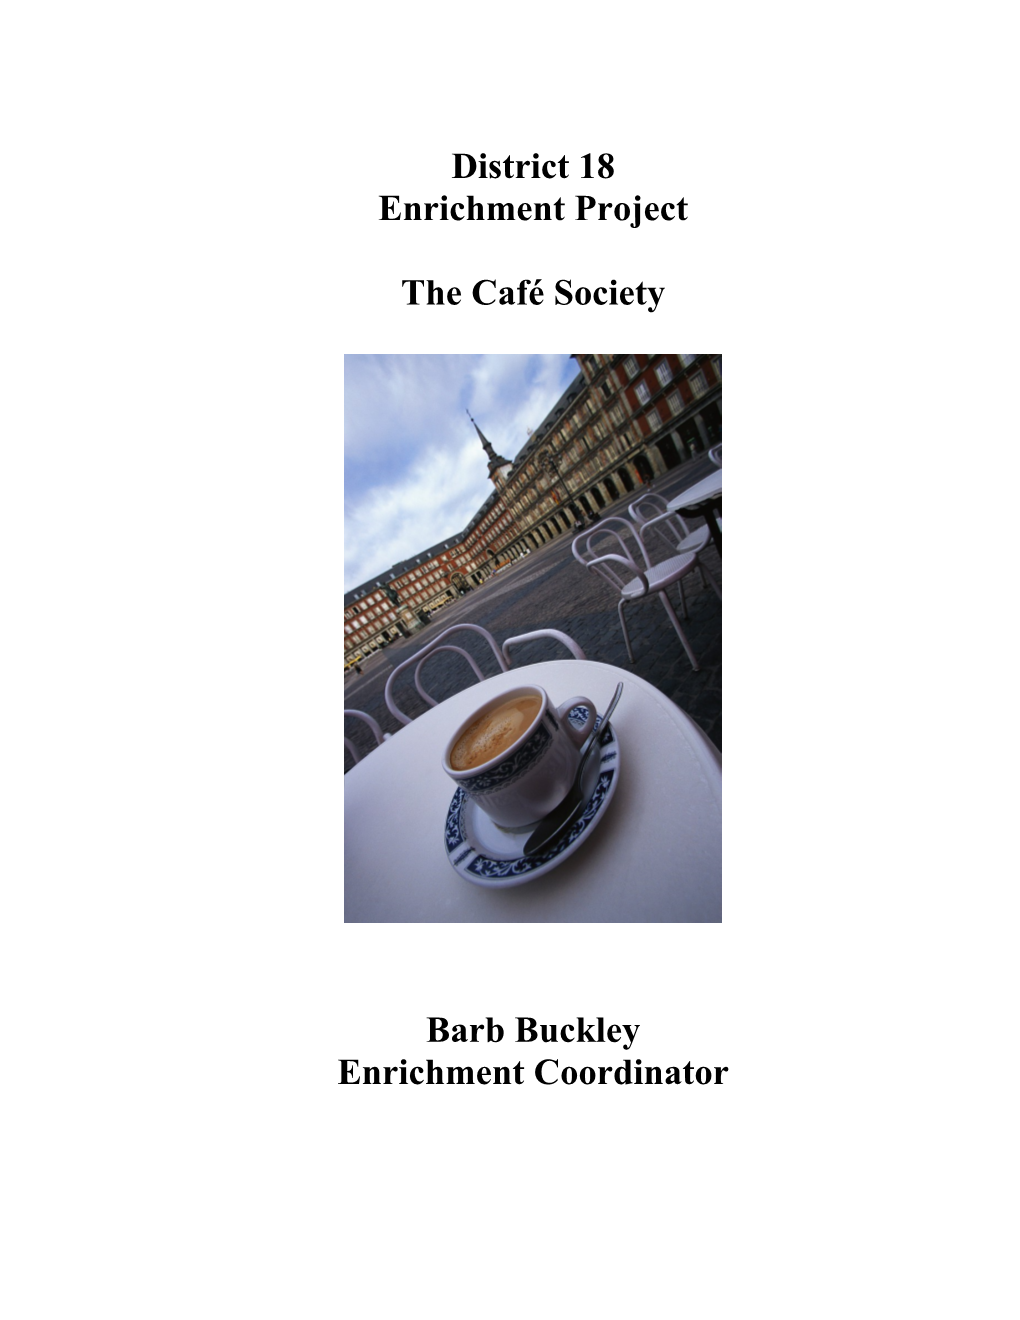 Enrichment Project s1